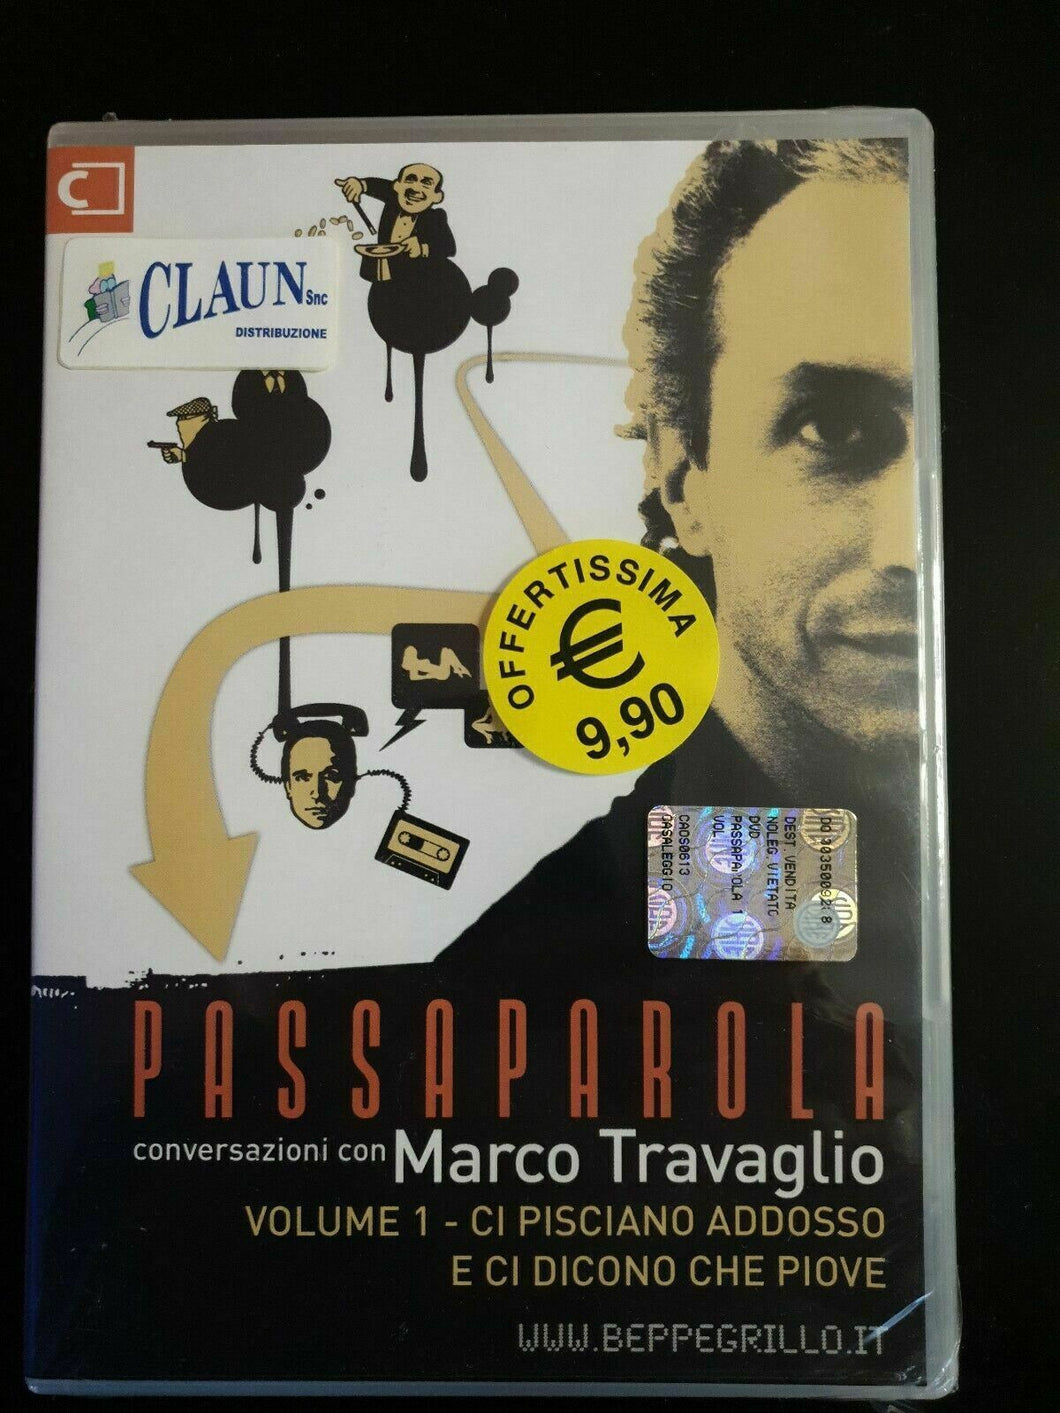 Marco Travaglio. Passaparola (2008) DVD Nuovo